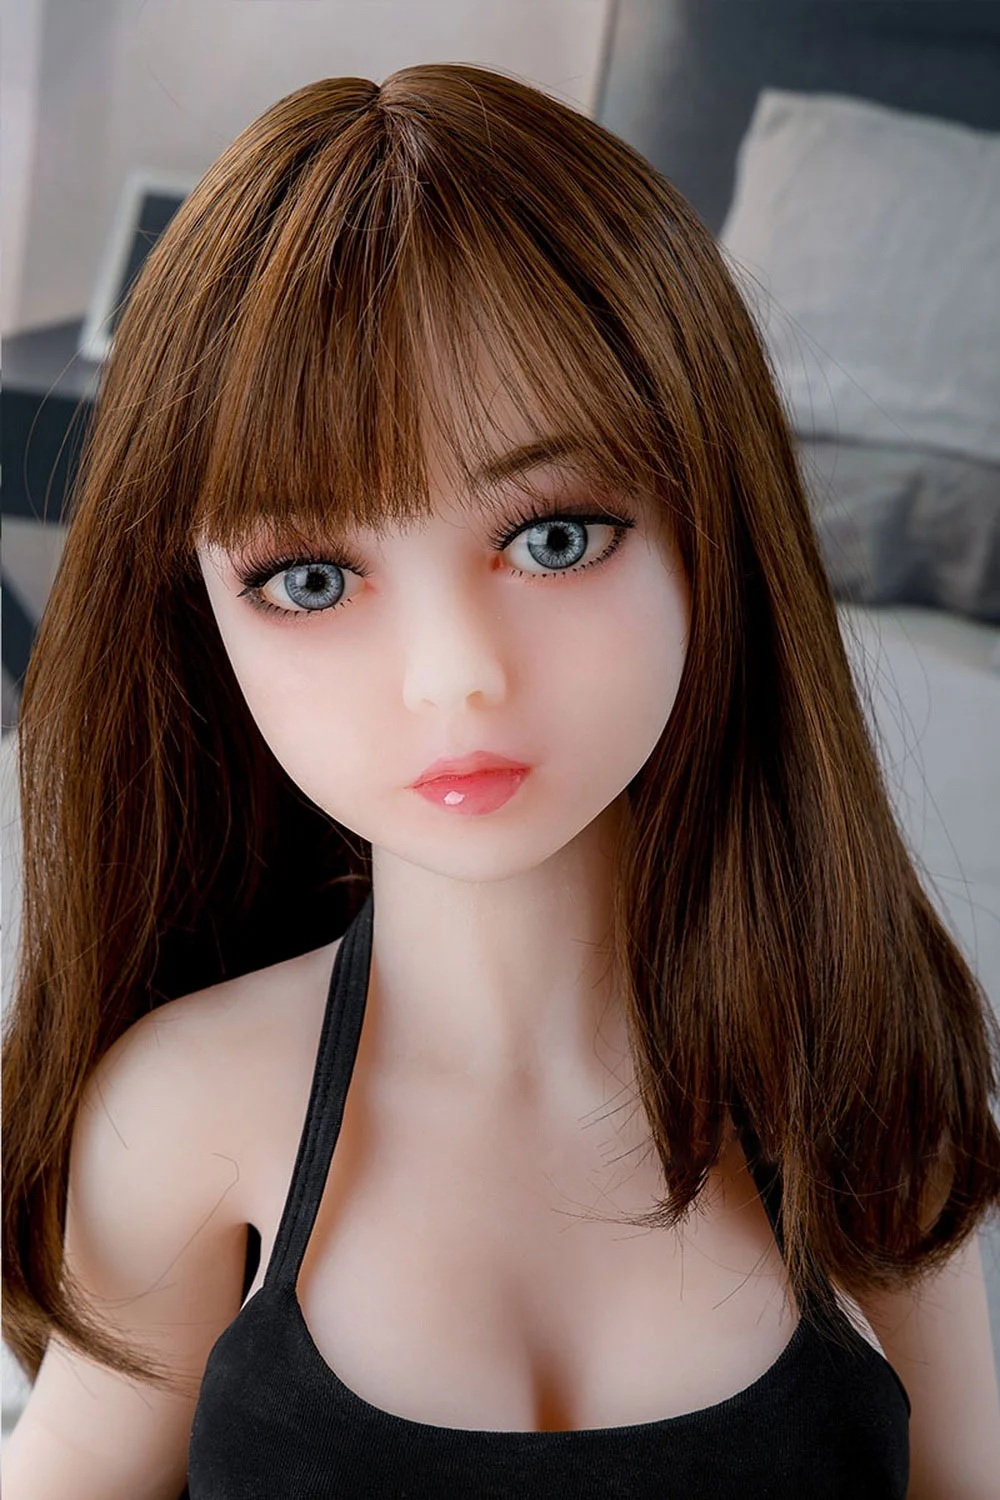 Mini sex doll with big grey eyes